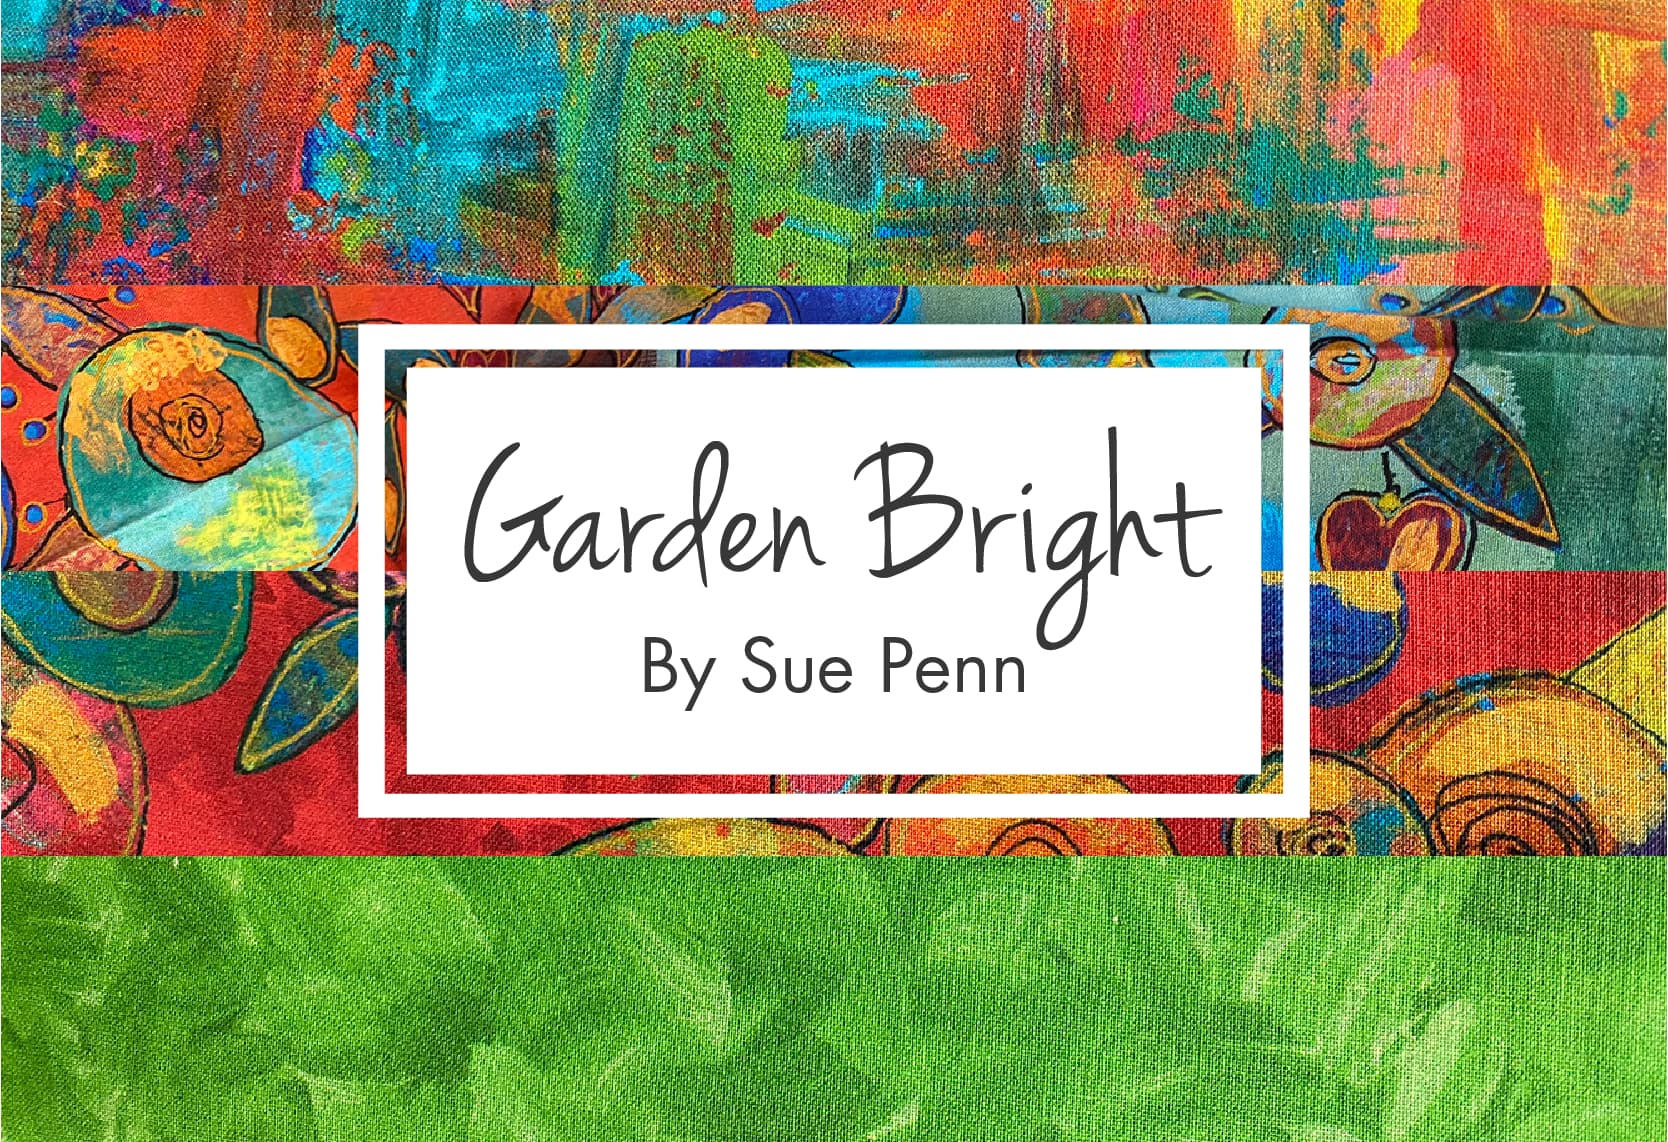 Garden Bright by Sue Penn